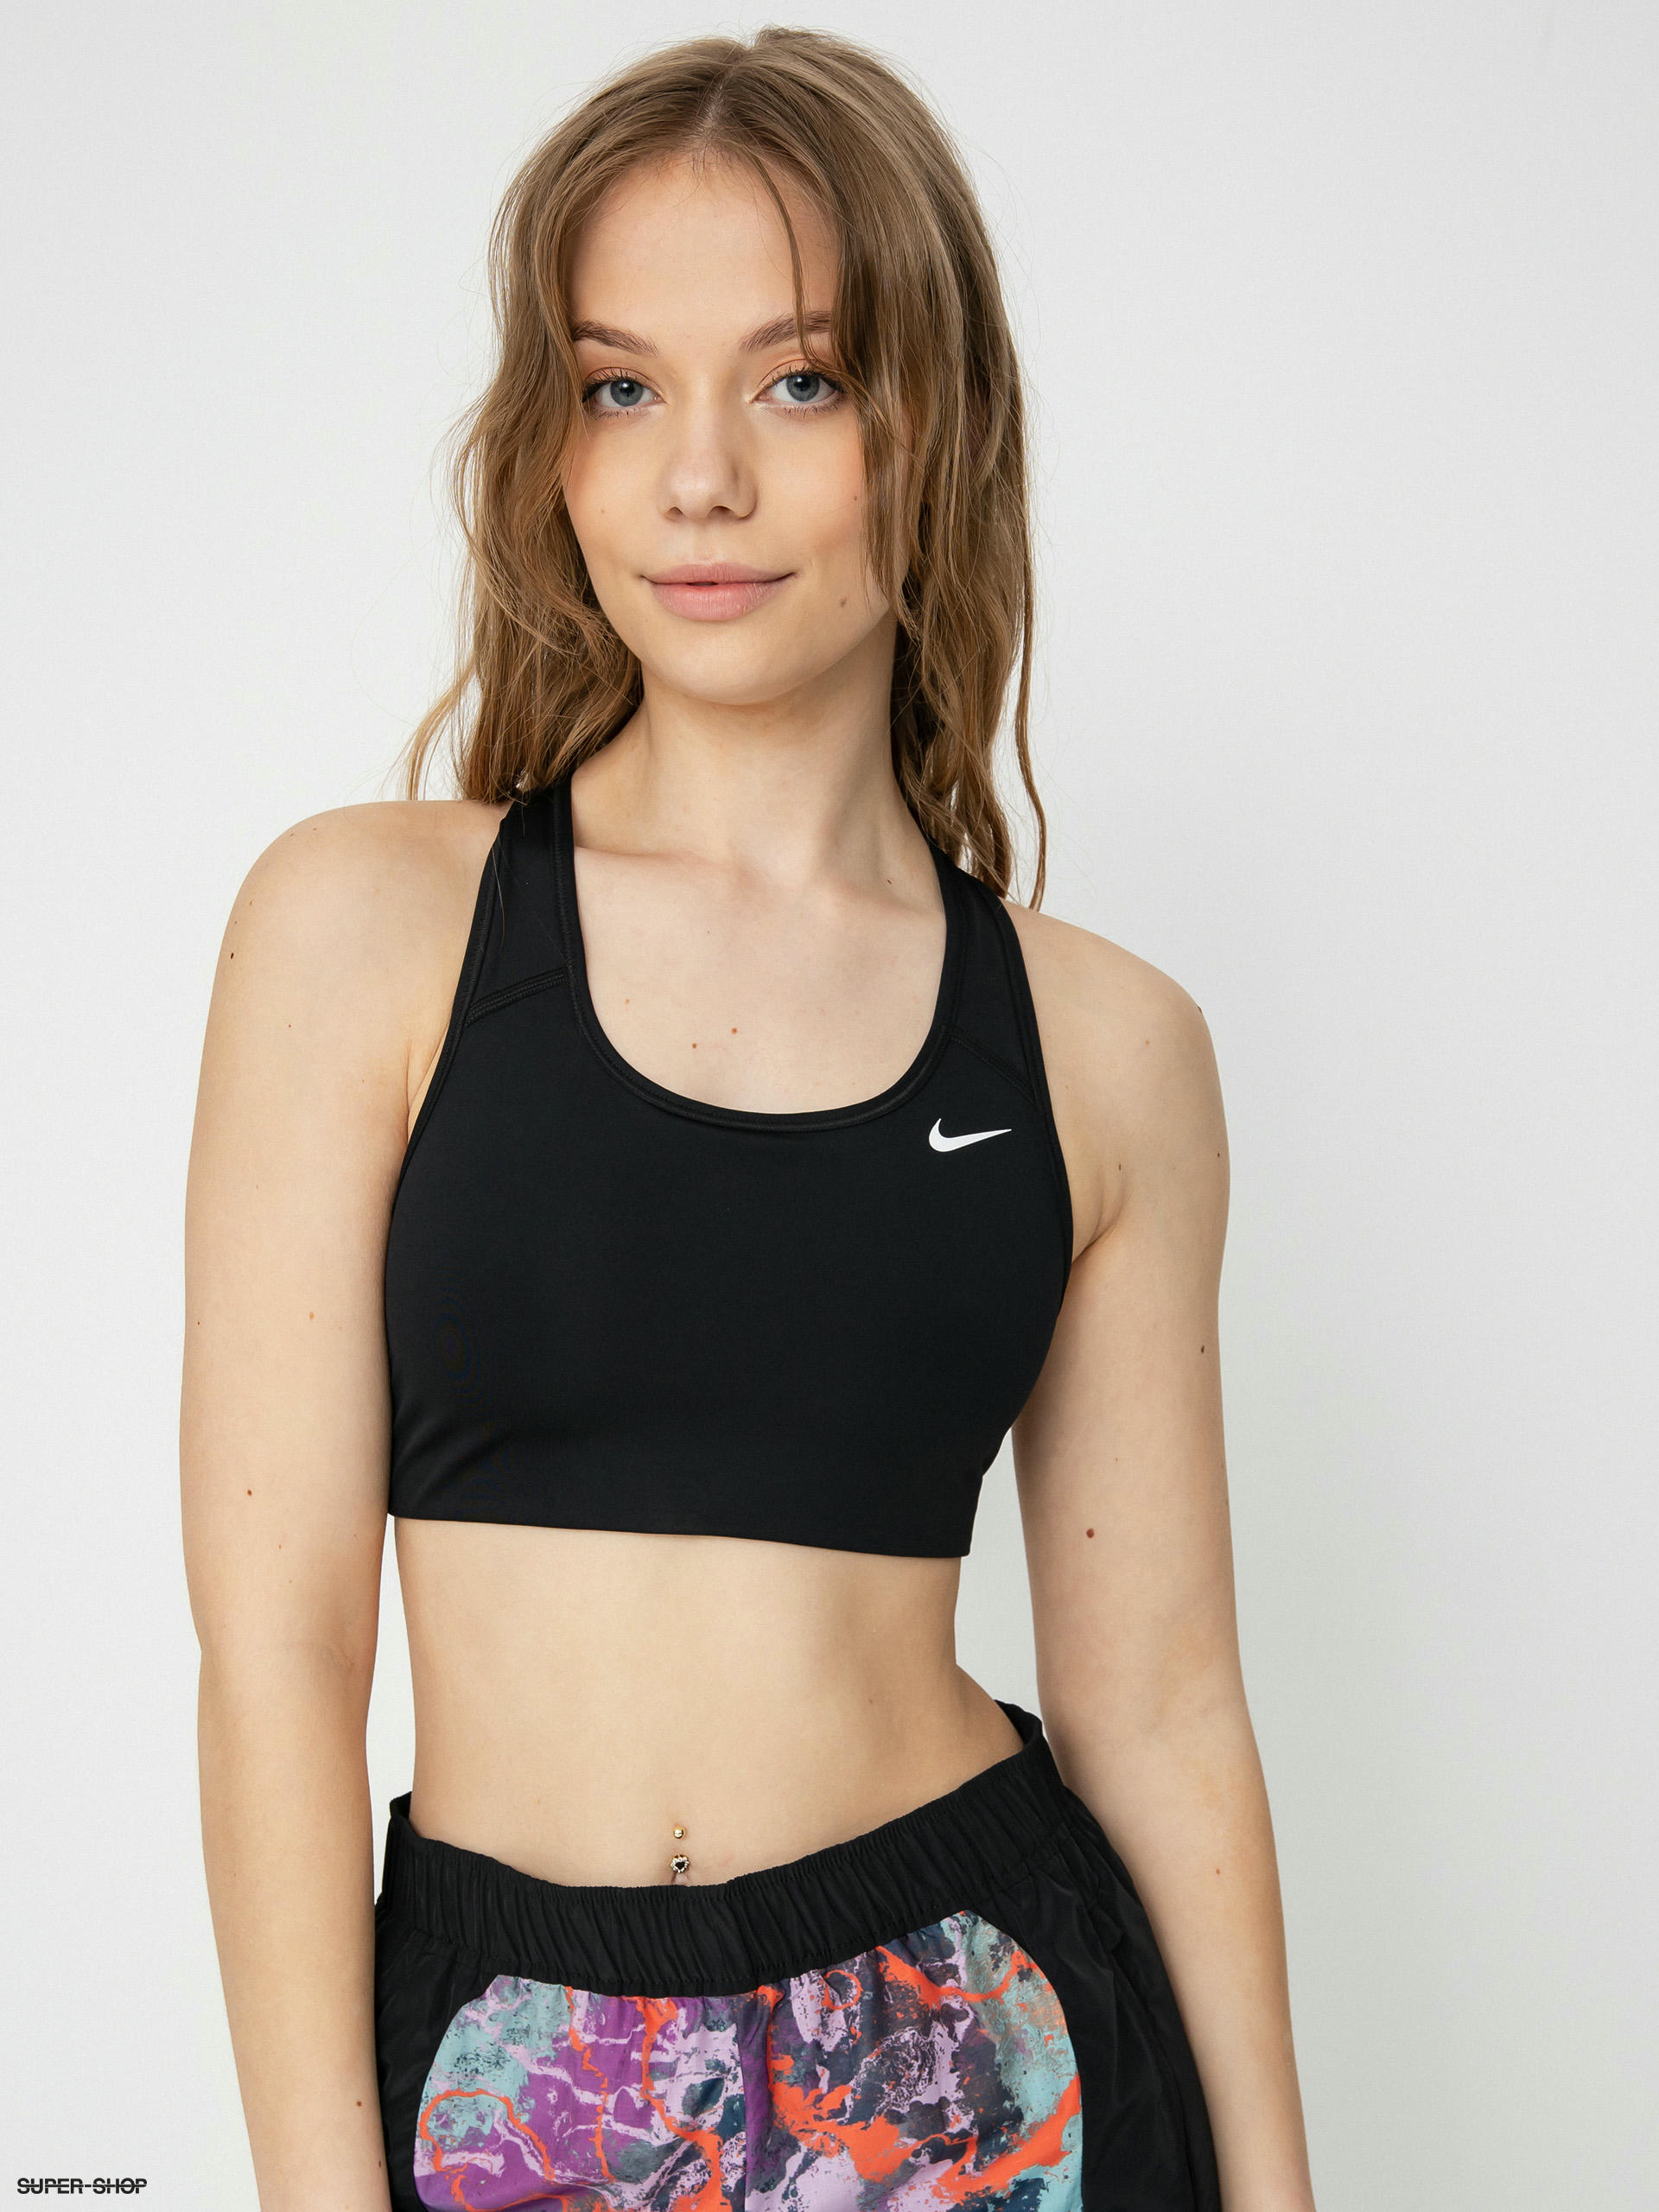 Nike Swoosh Innerwear & Underwear